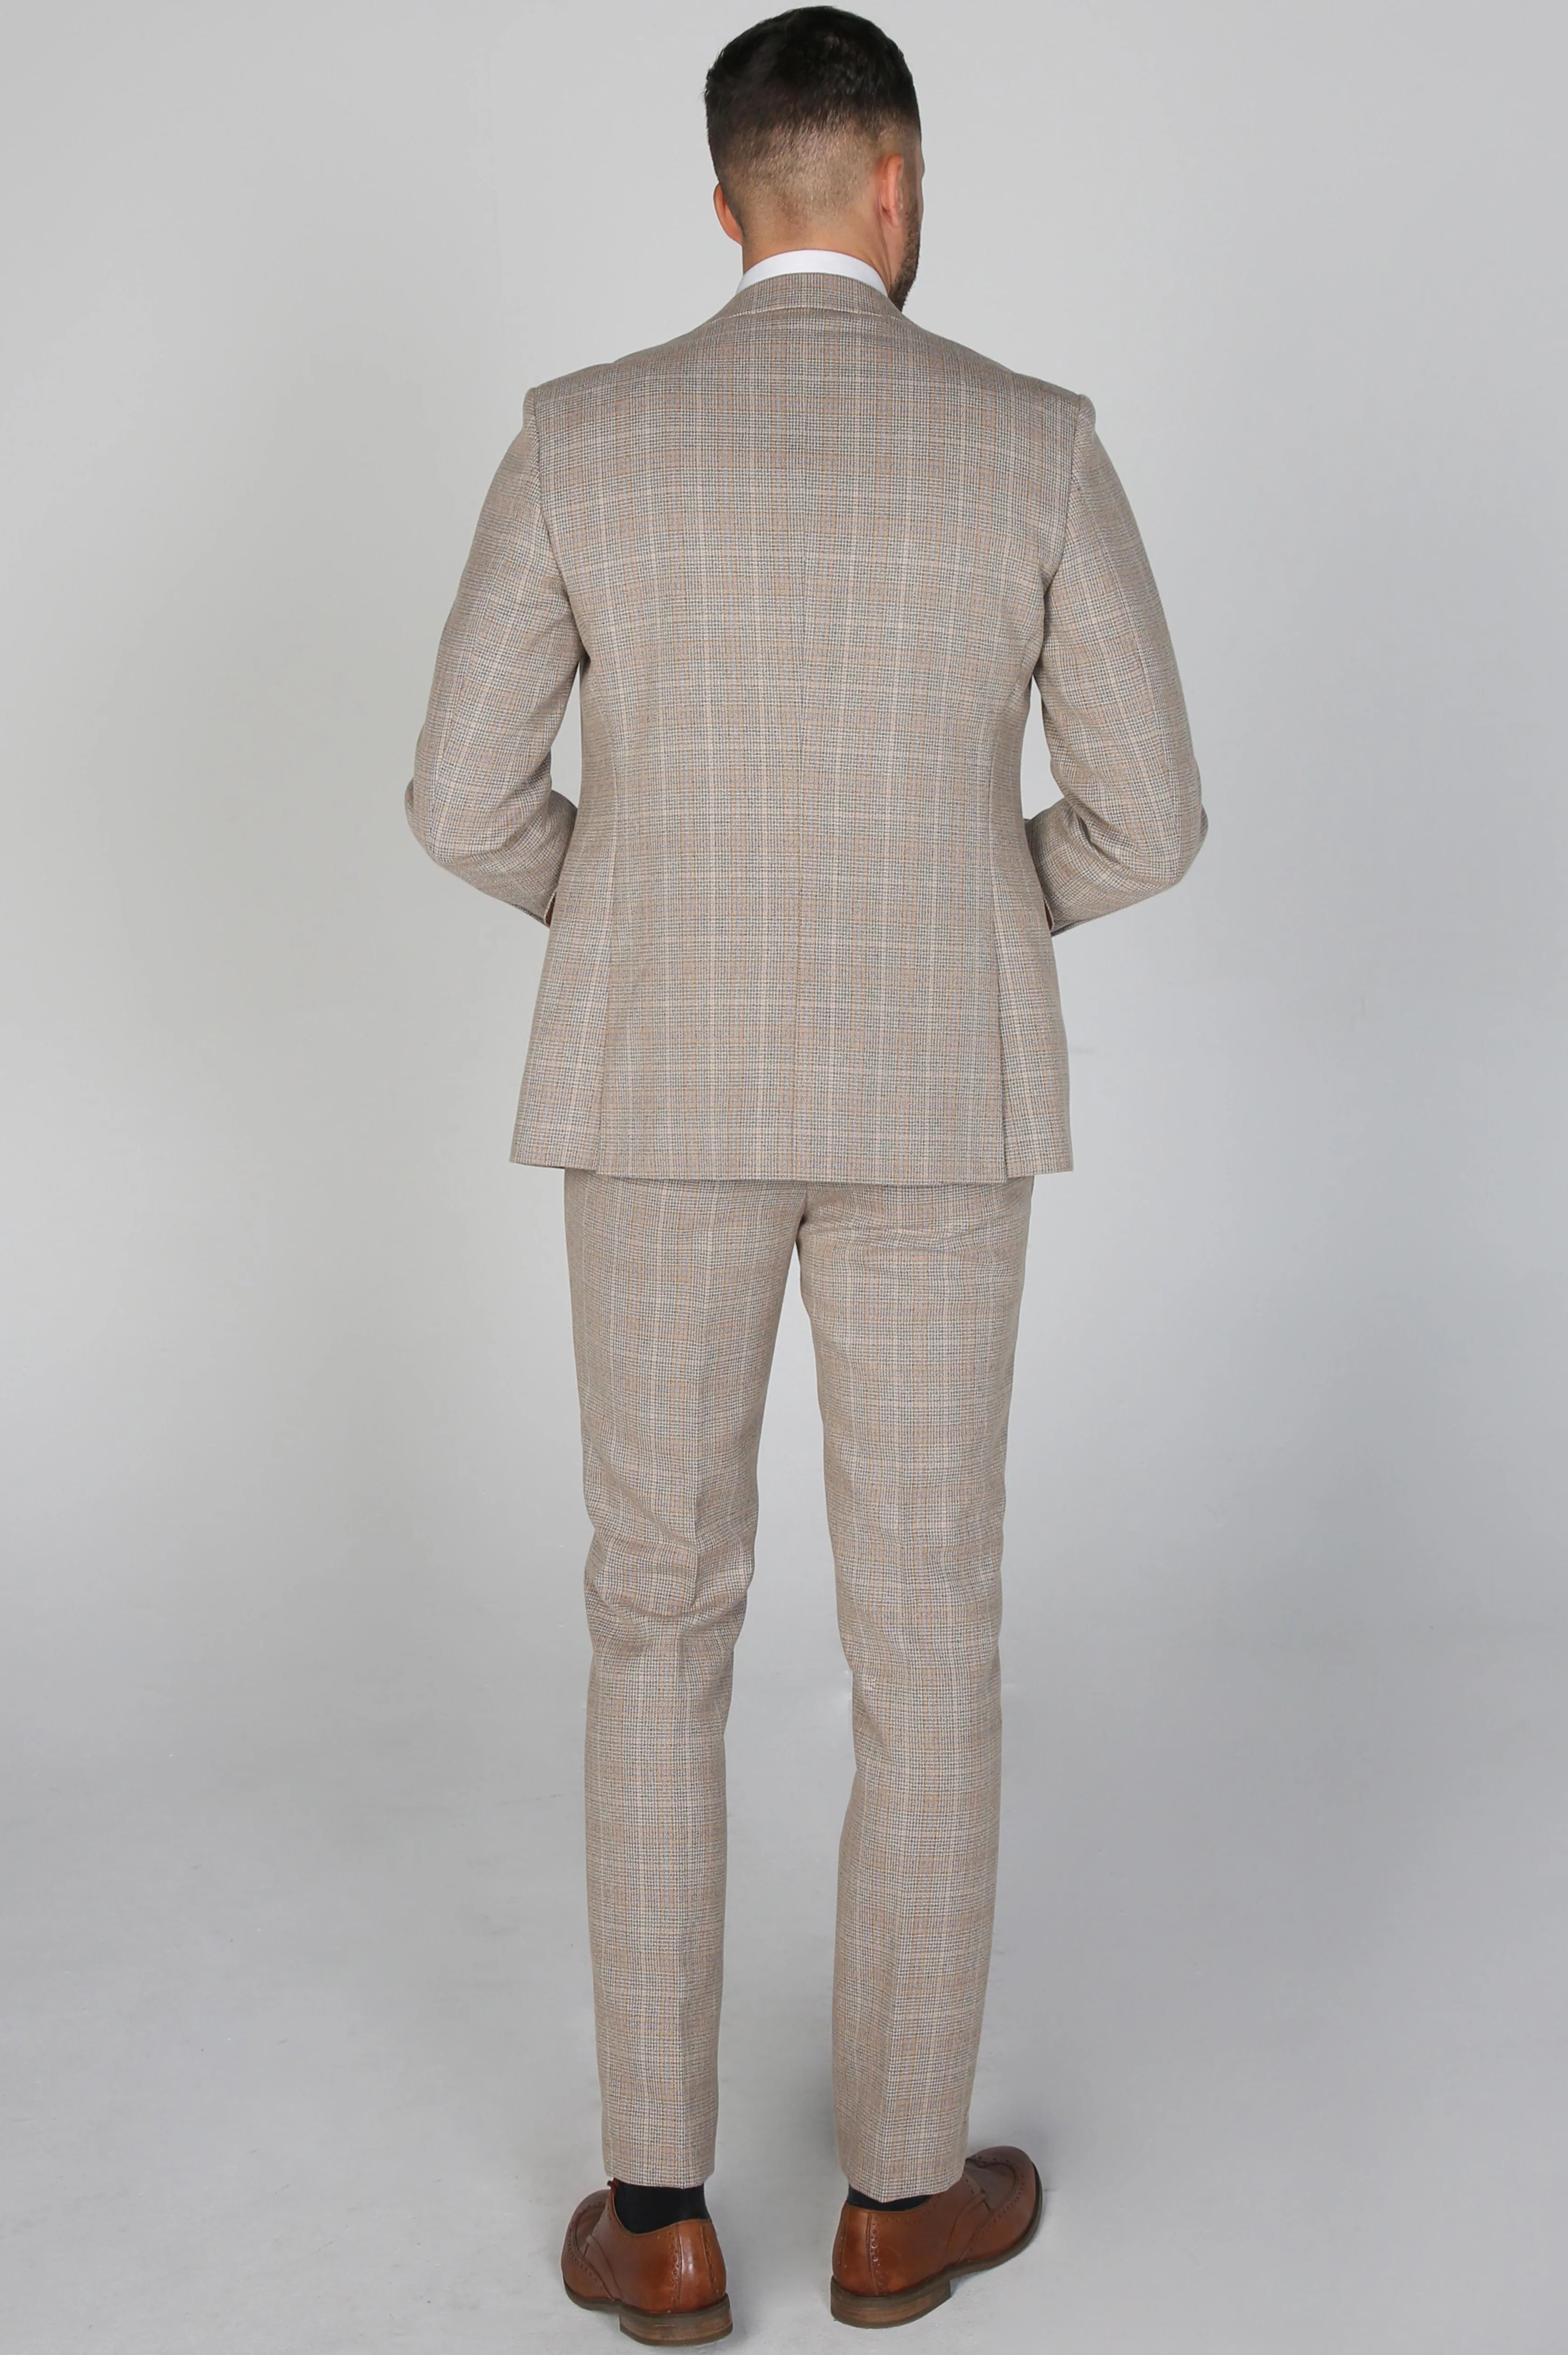 Paul Andrew -Holland Beige Men's Three Piece Suit